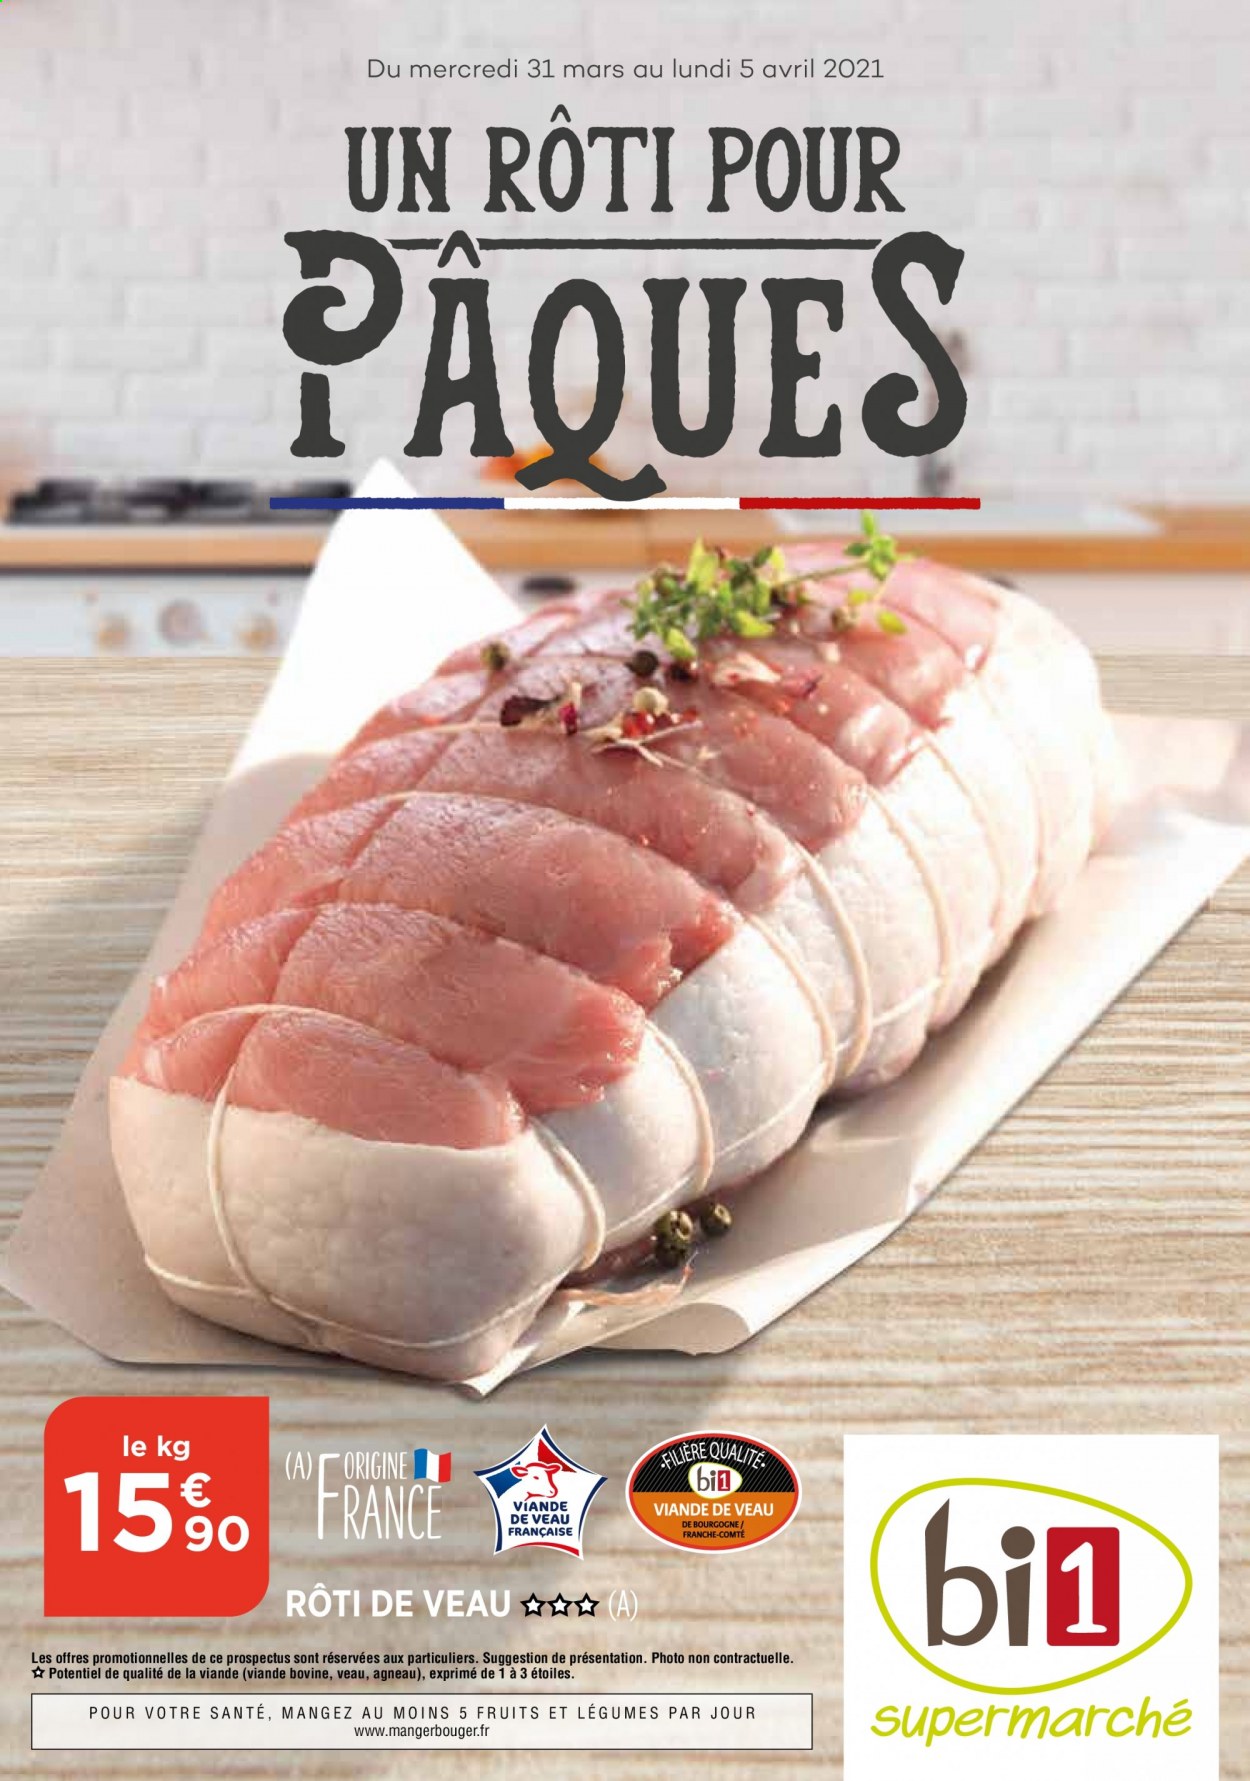 thumbnail - Catalogue Bi1 - 31/03/2021 - 05/04/2021 - Produits soldés - viande de veau, Comté. Page 1.